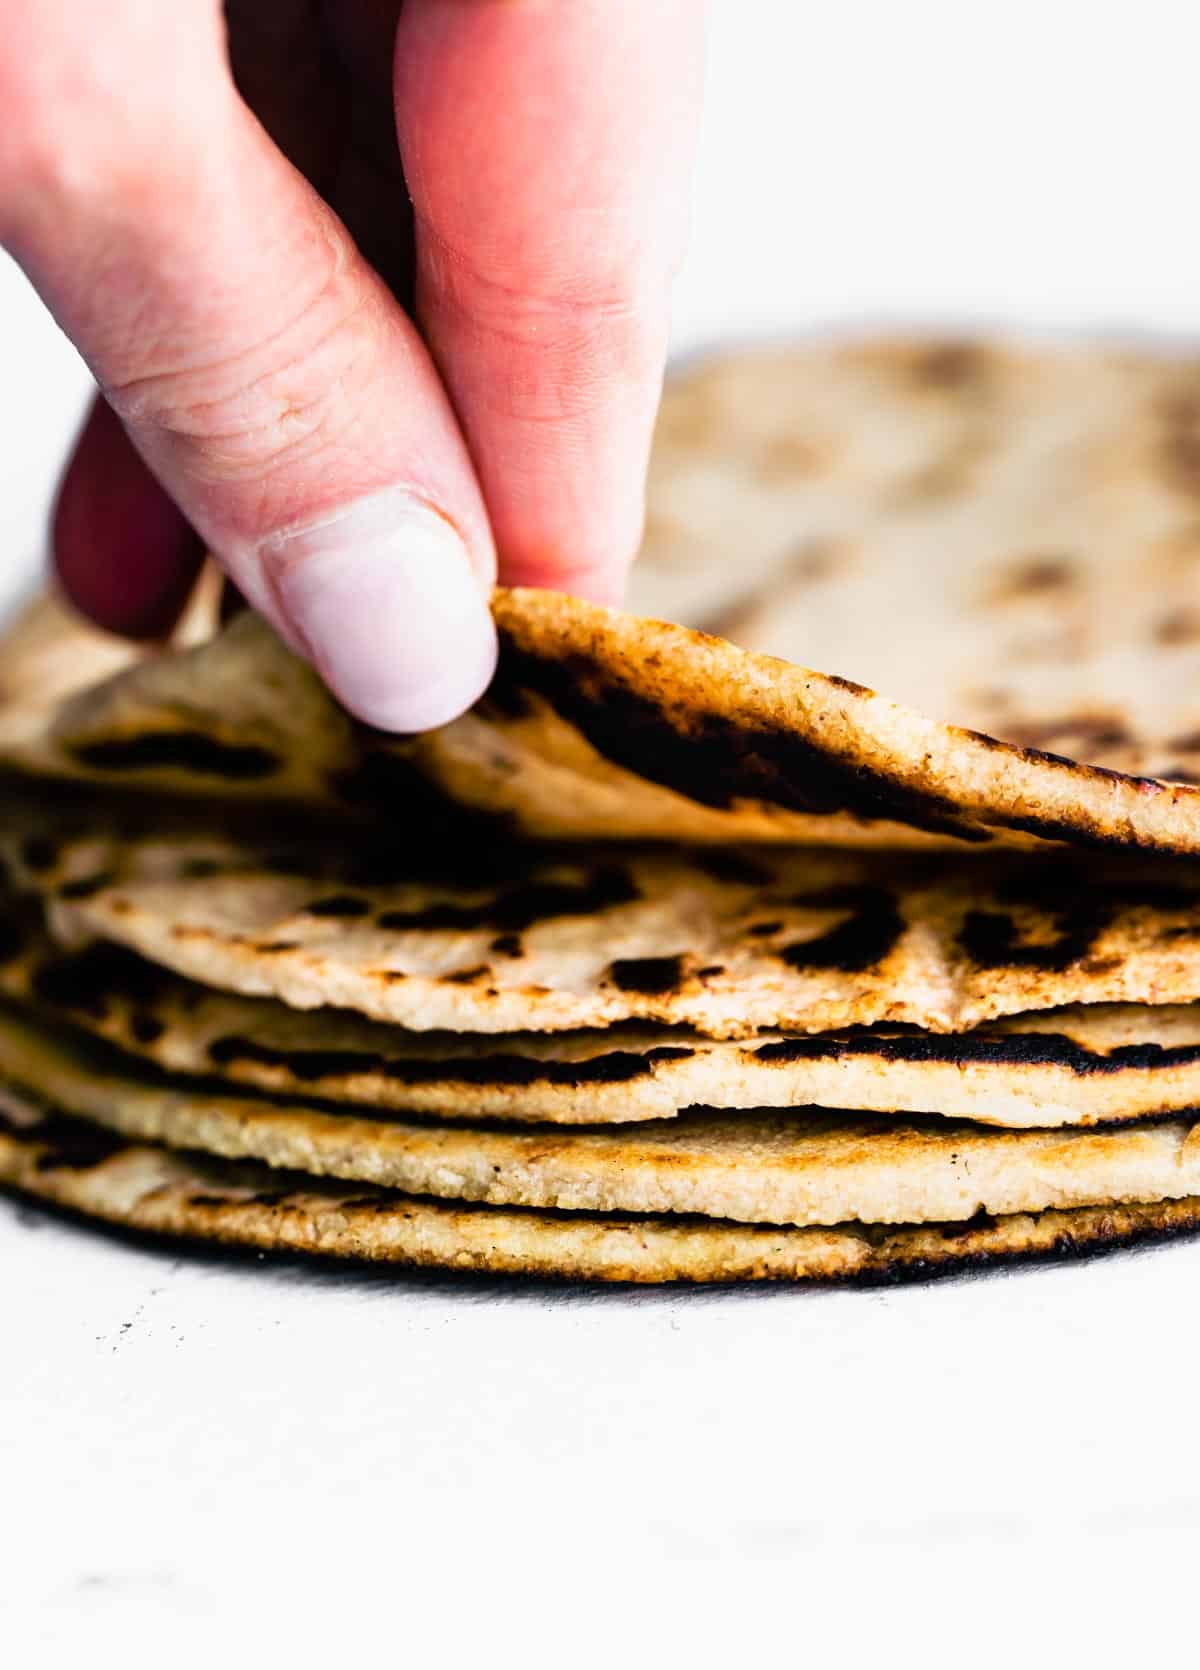 A hand grabbing an almond flour tortilla from a stack of tortillas.